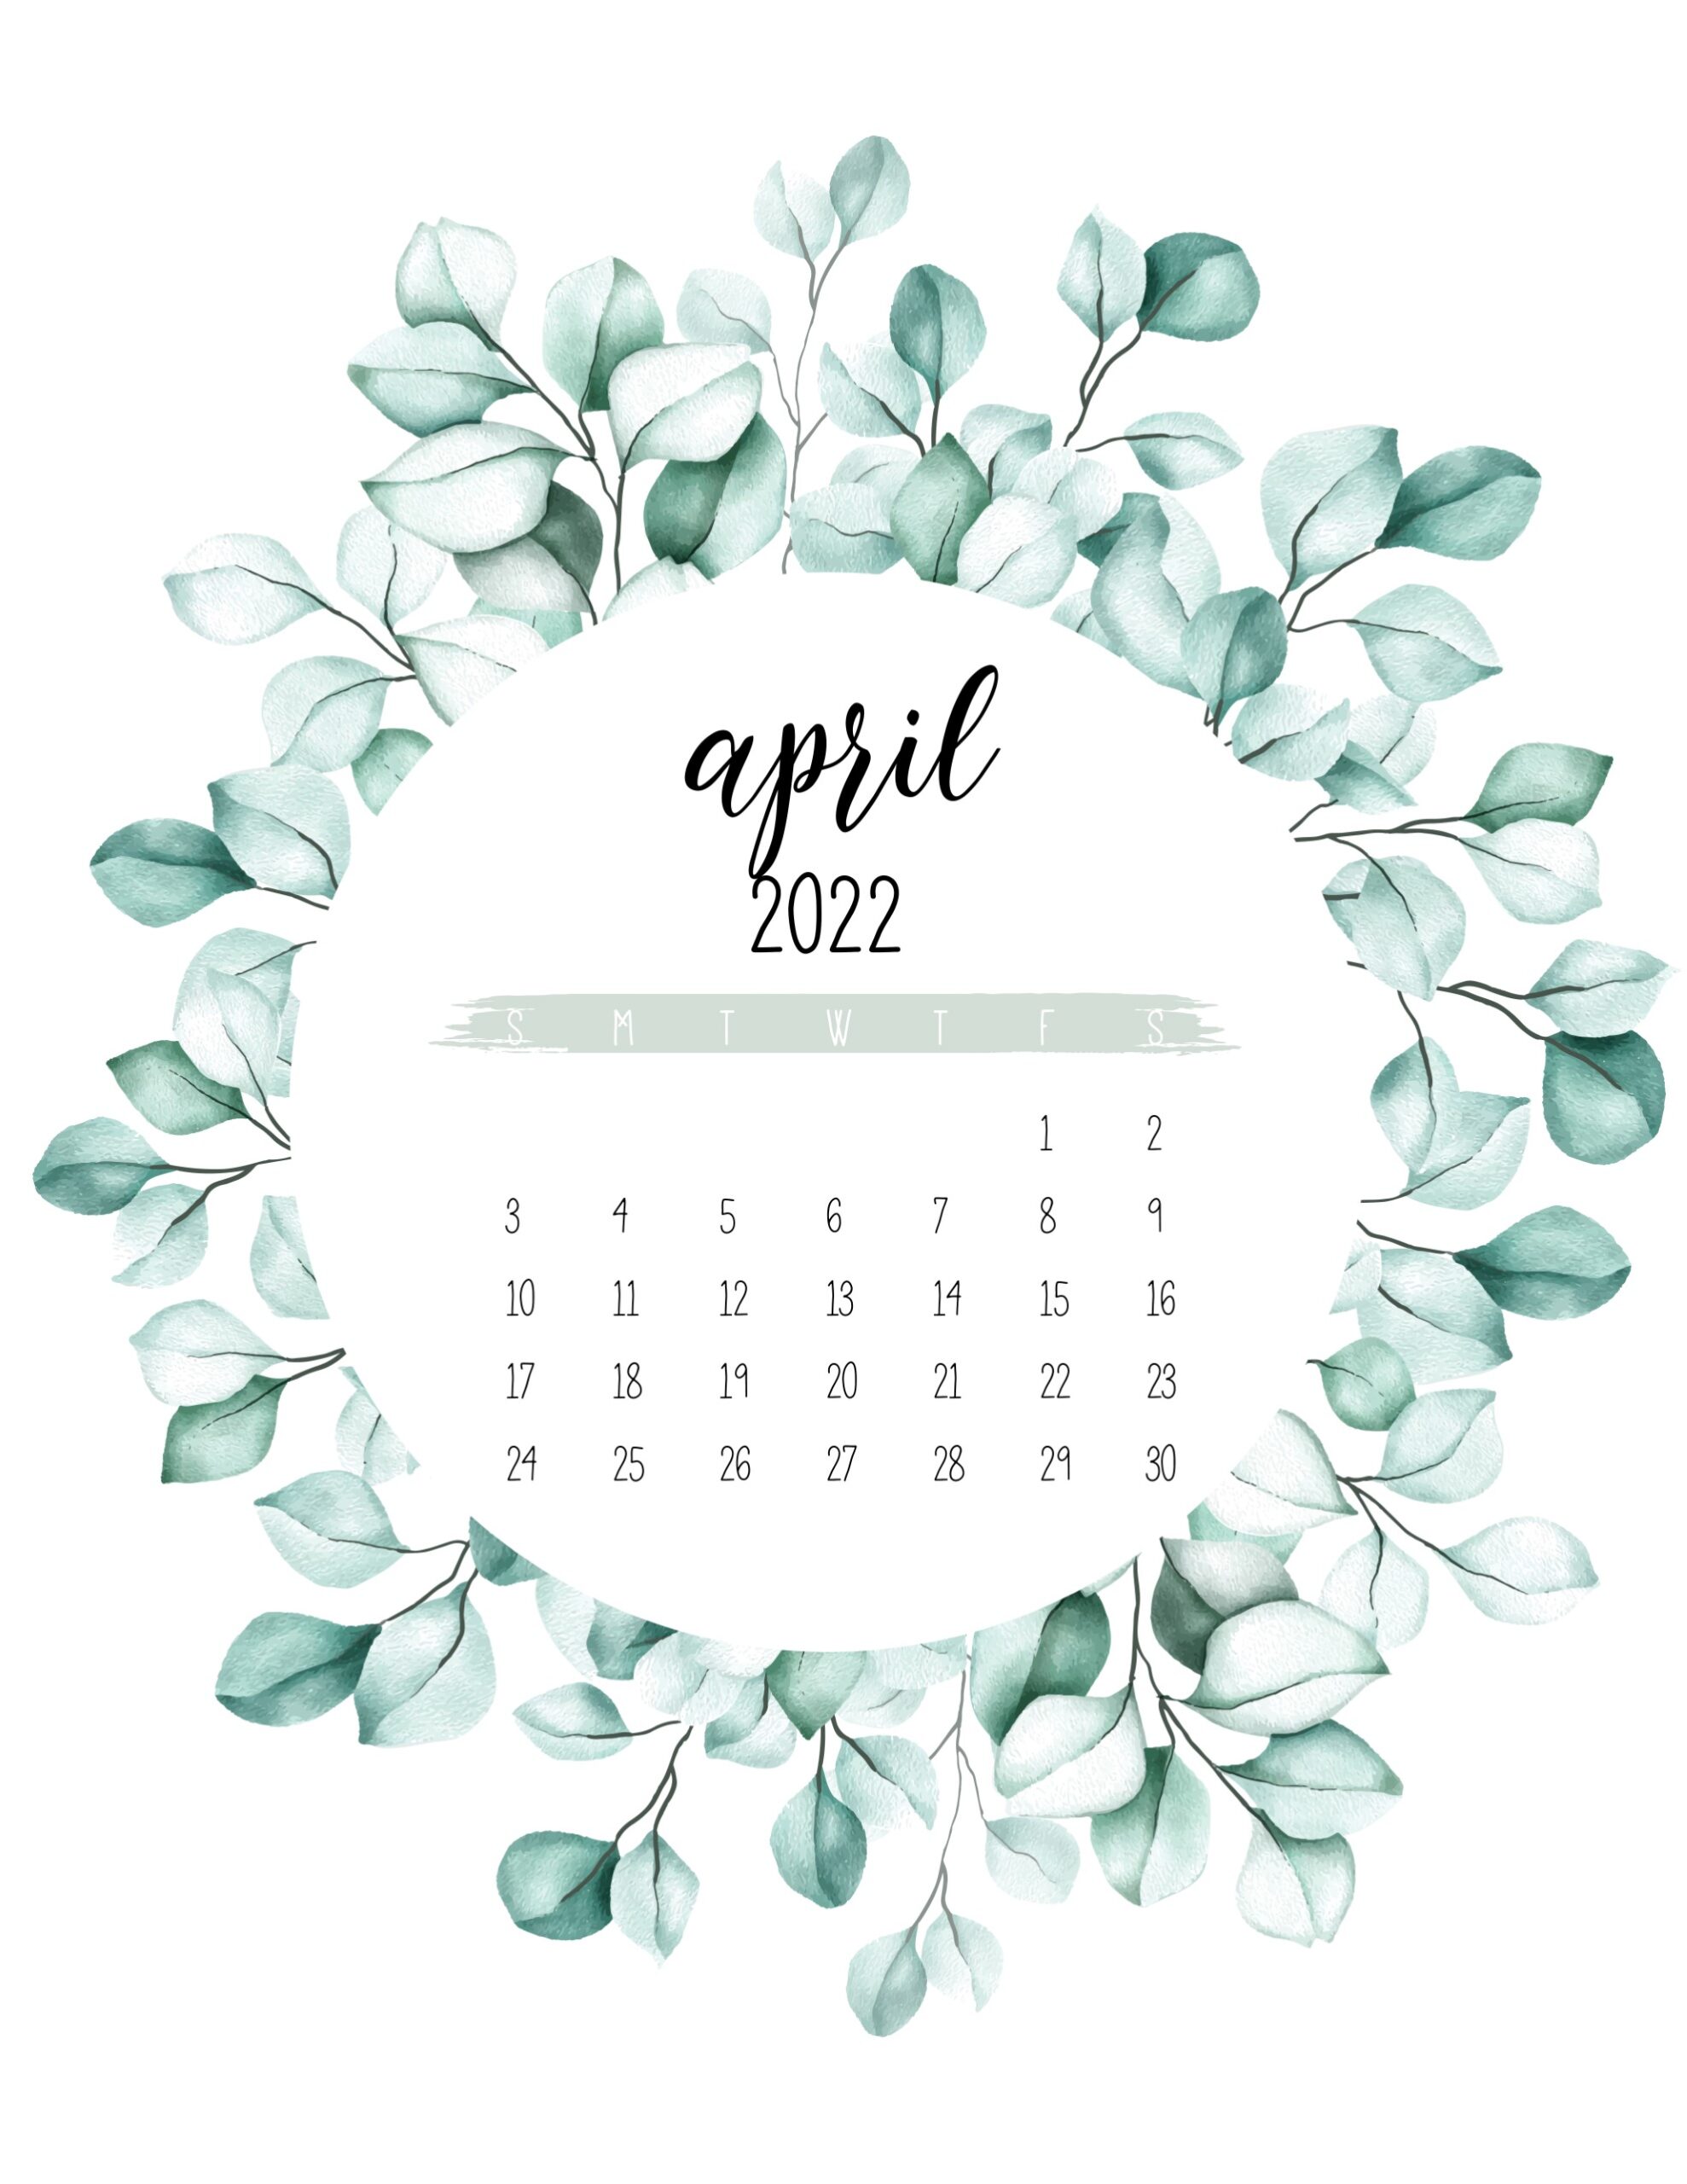 April 2022 Calendar Wallpapers - Wallpaper Cave